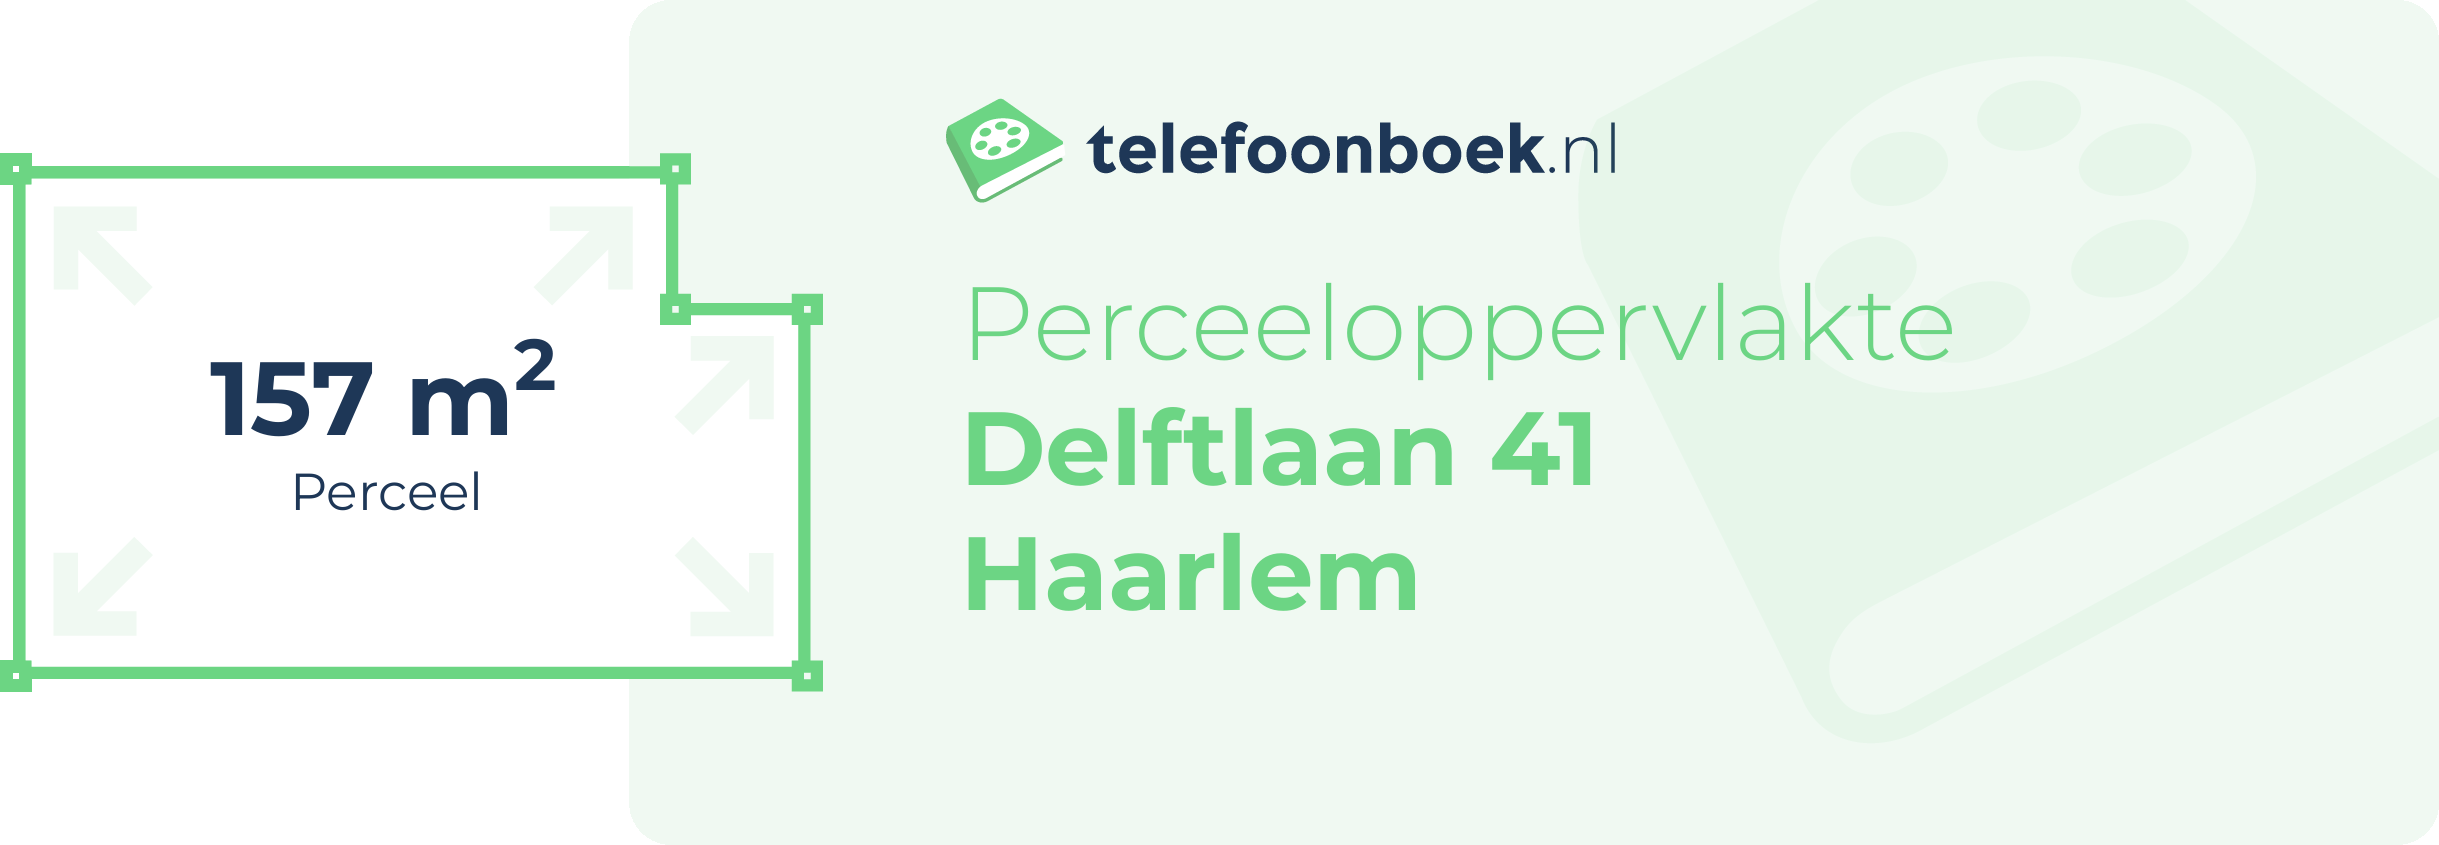 Perceeloppervlakte Delftlaan 41 Haarlem